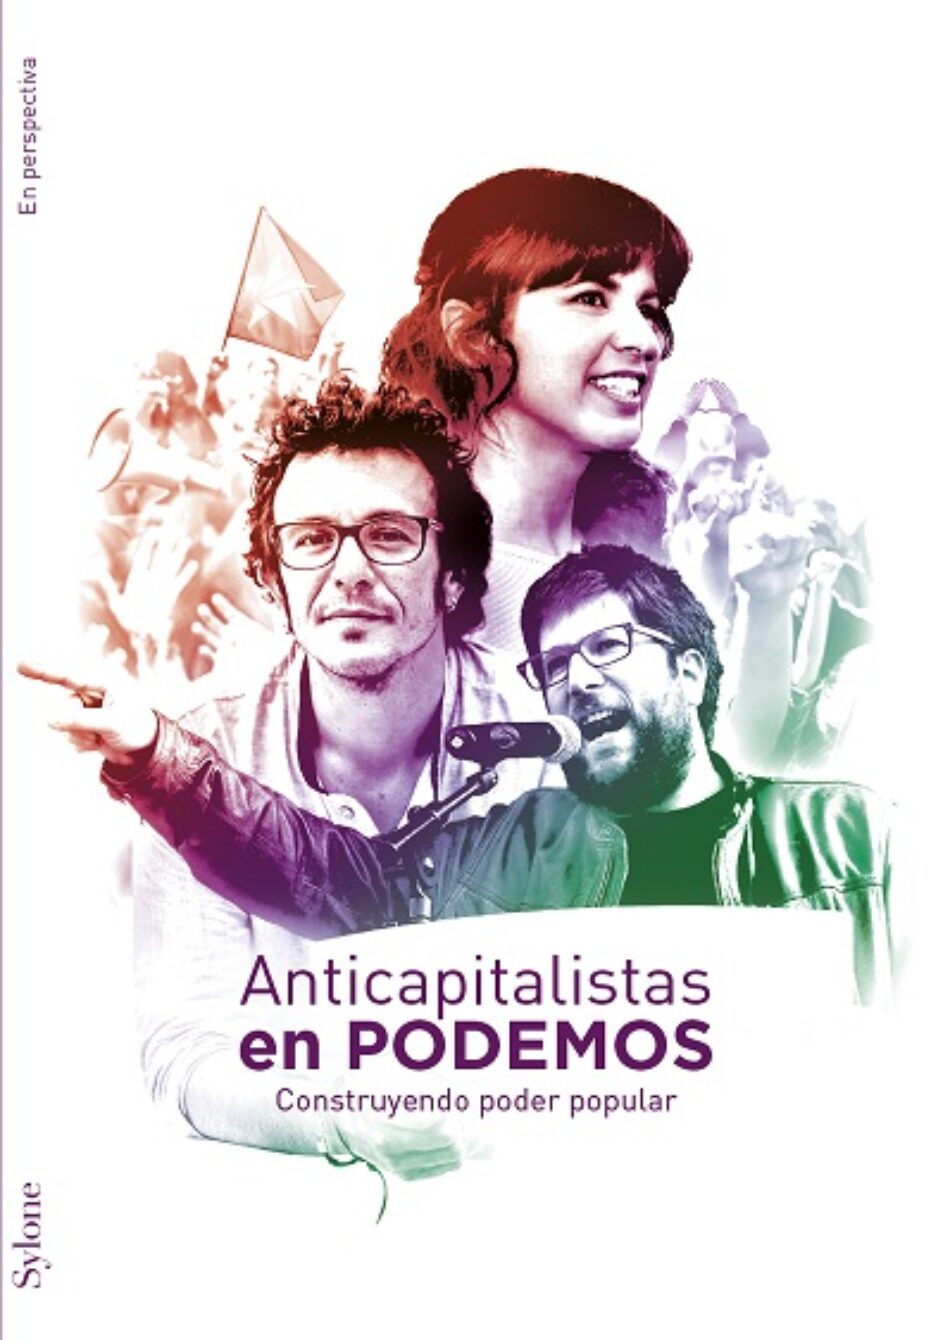 Anticapitalistas Murcia: “El debate público en Podemos debería ser sobre el programa y no sobre procedimientos de votación”